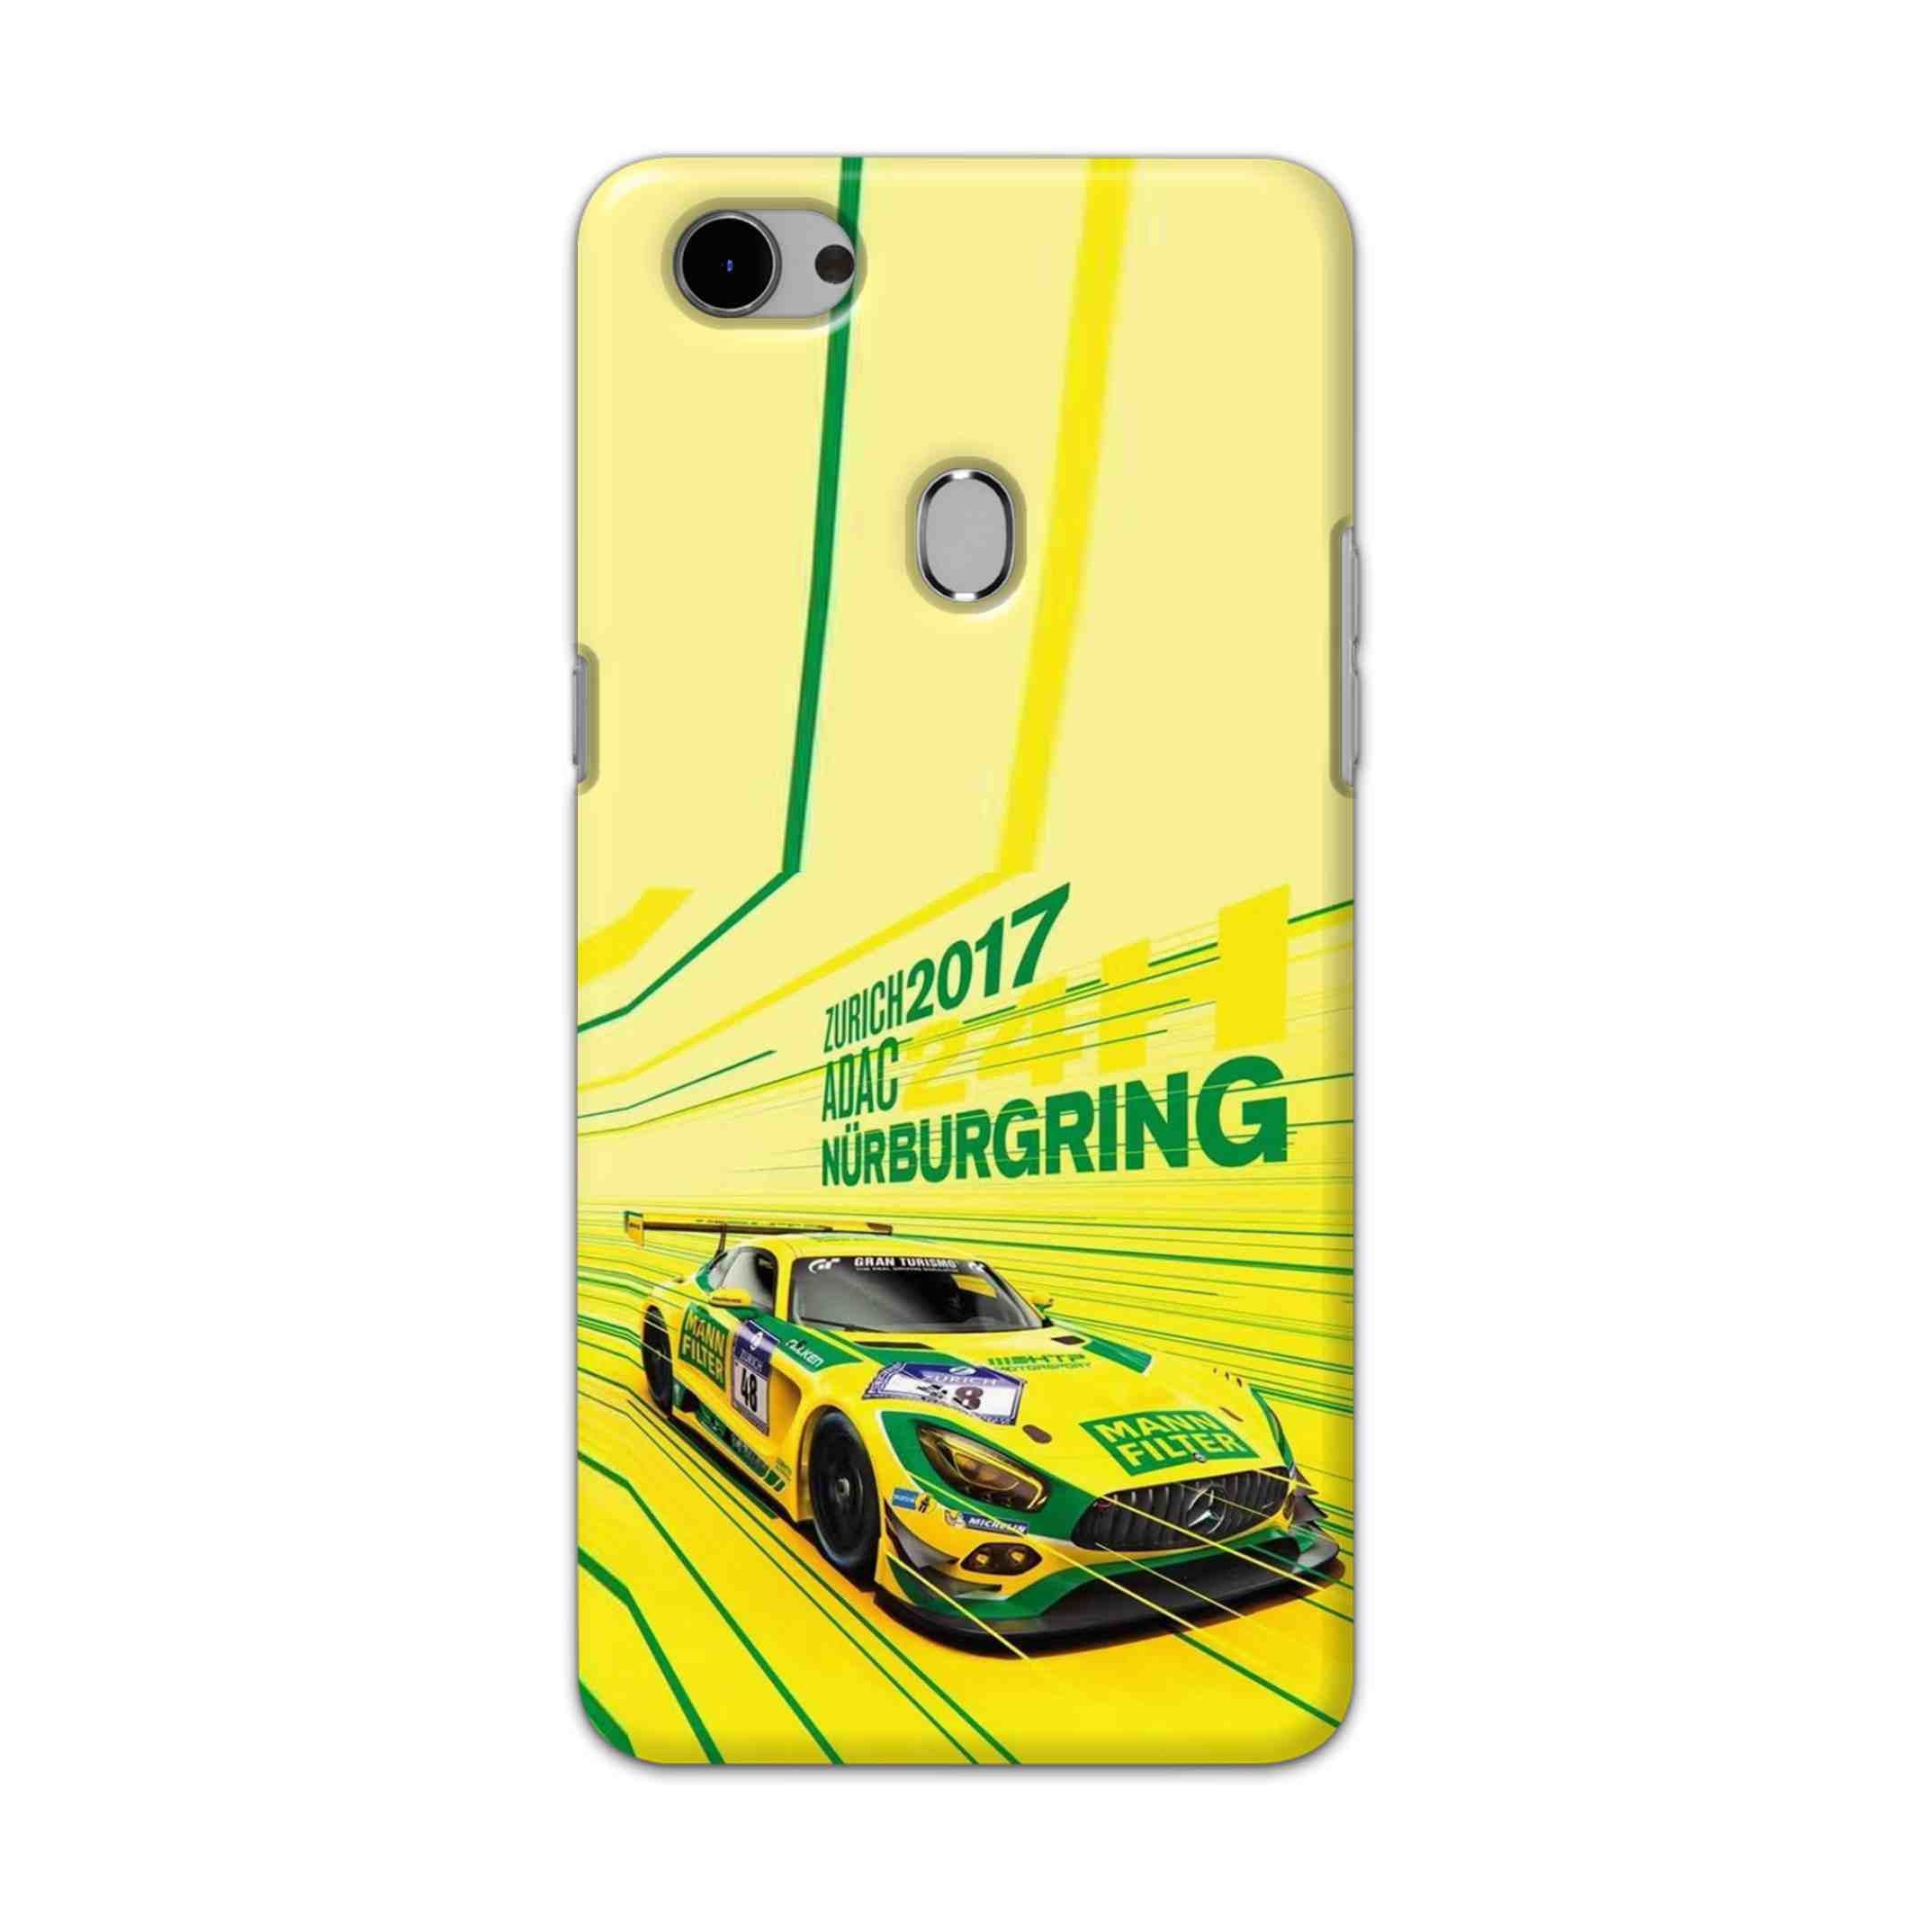 Buy Drift Racing Hard Back Mobile Phone Case Cover For Oppo F7 Online